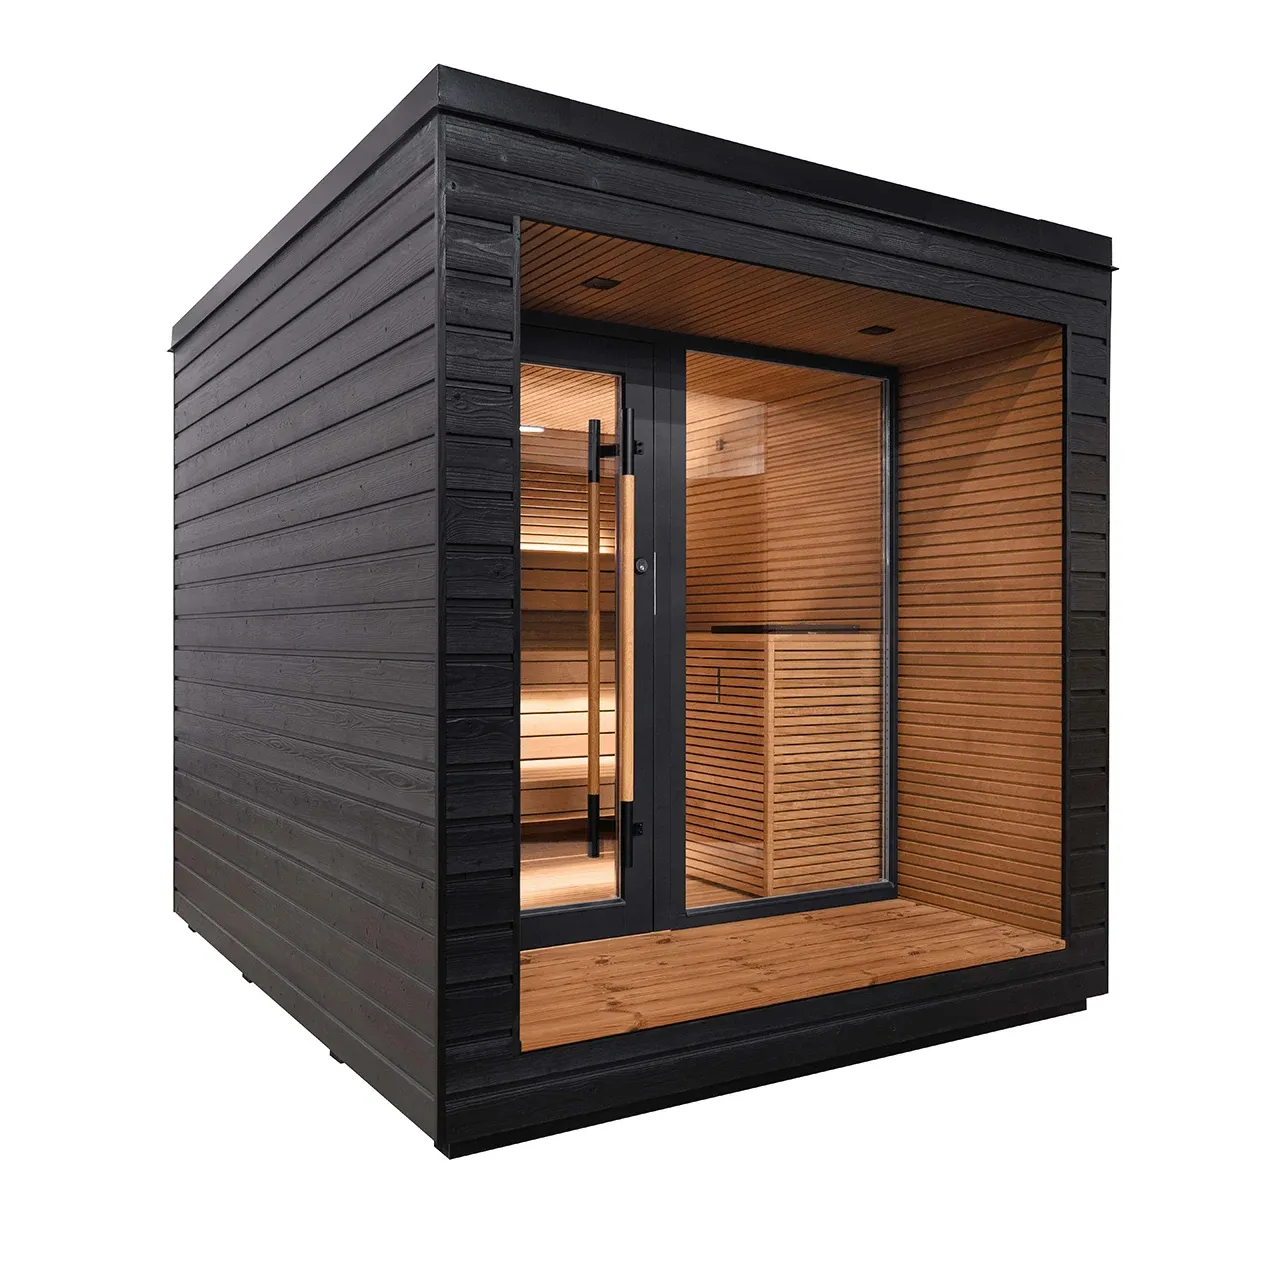 Strakke Design Outdoor Saunaruimte Met Volledige Glazen Deur Voor Luxe Home Spa-Ervaring